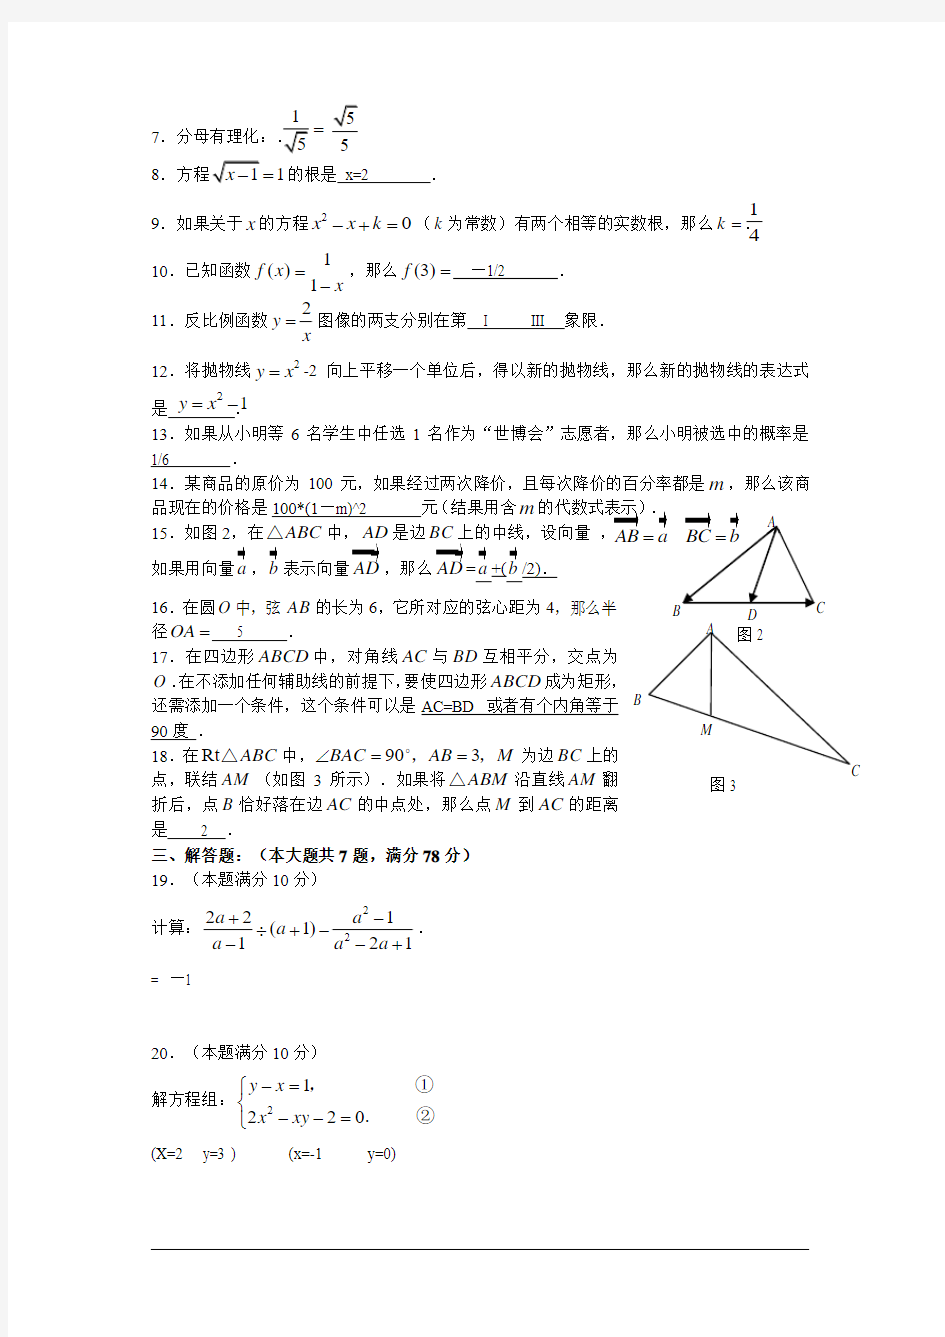 2009年上海市初中毕业生数学统一学业考试及答案